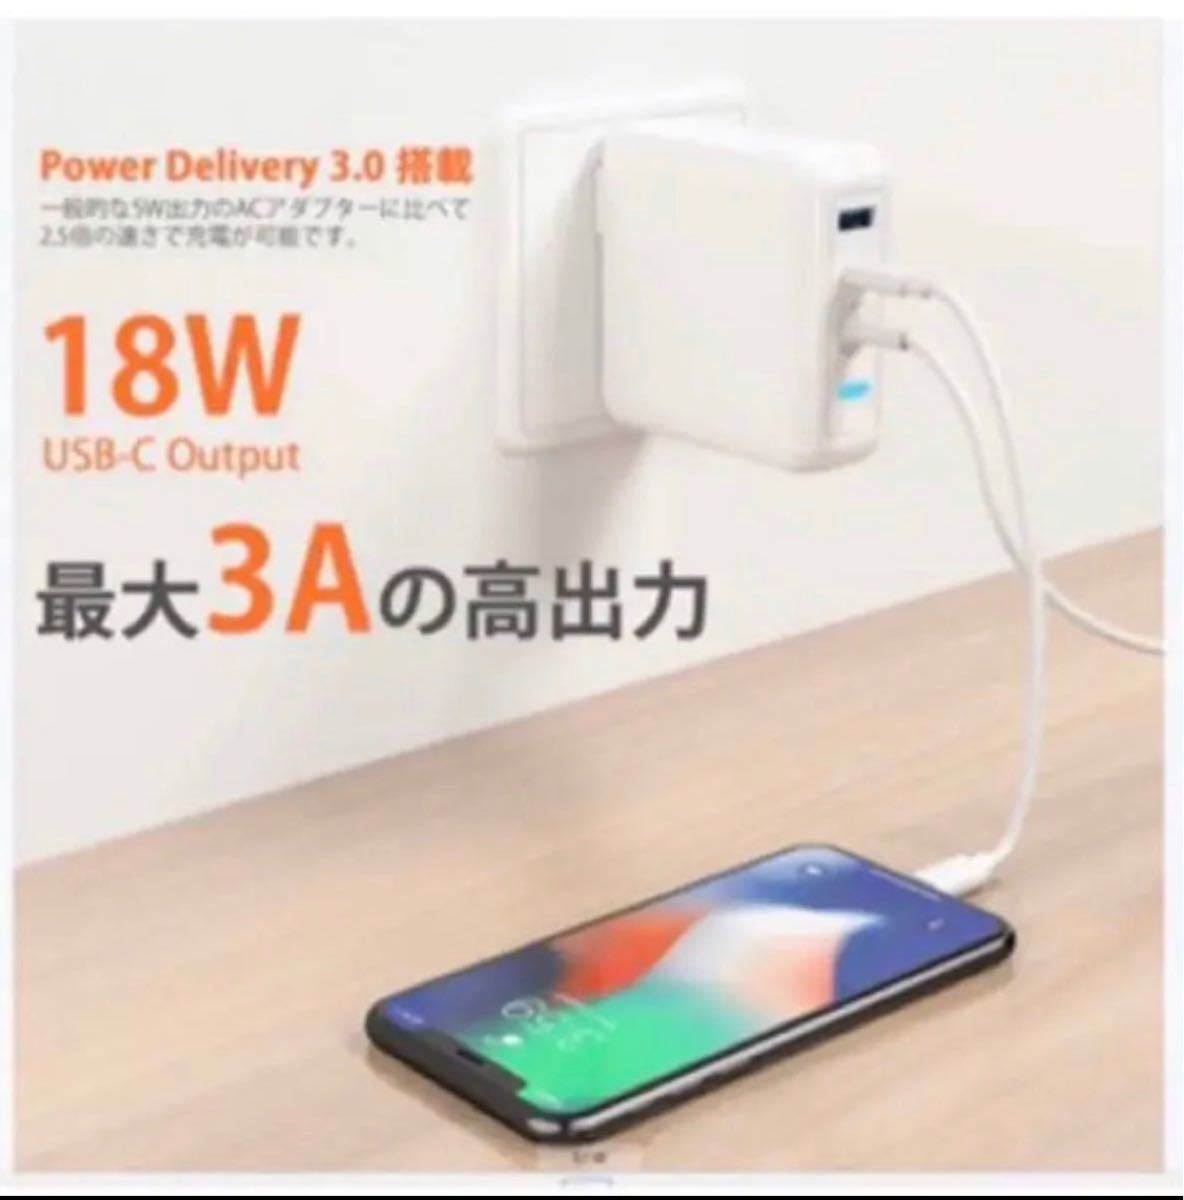 【新品】MacBook Pro Air 電源アダプタ　magsafe2T型充電器